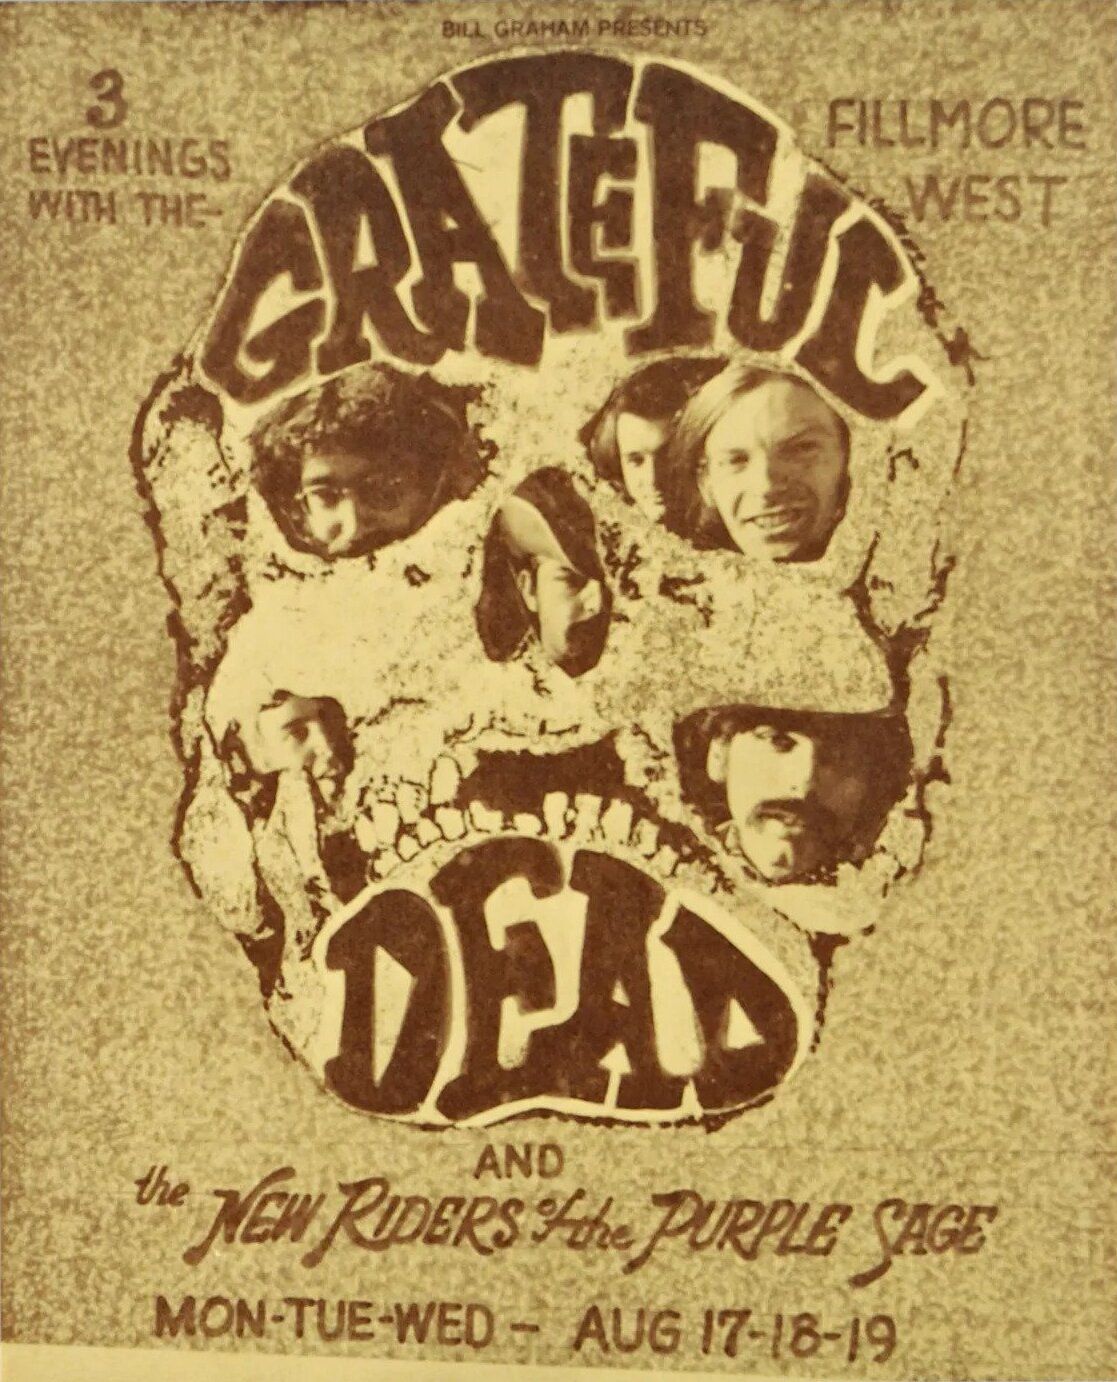 Grateful Dead Fillmore West 1970 Concert Poster